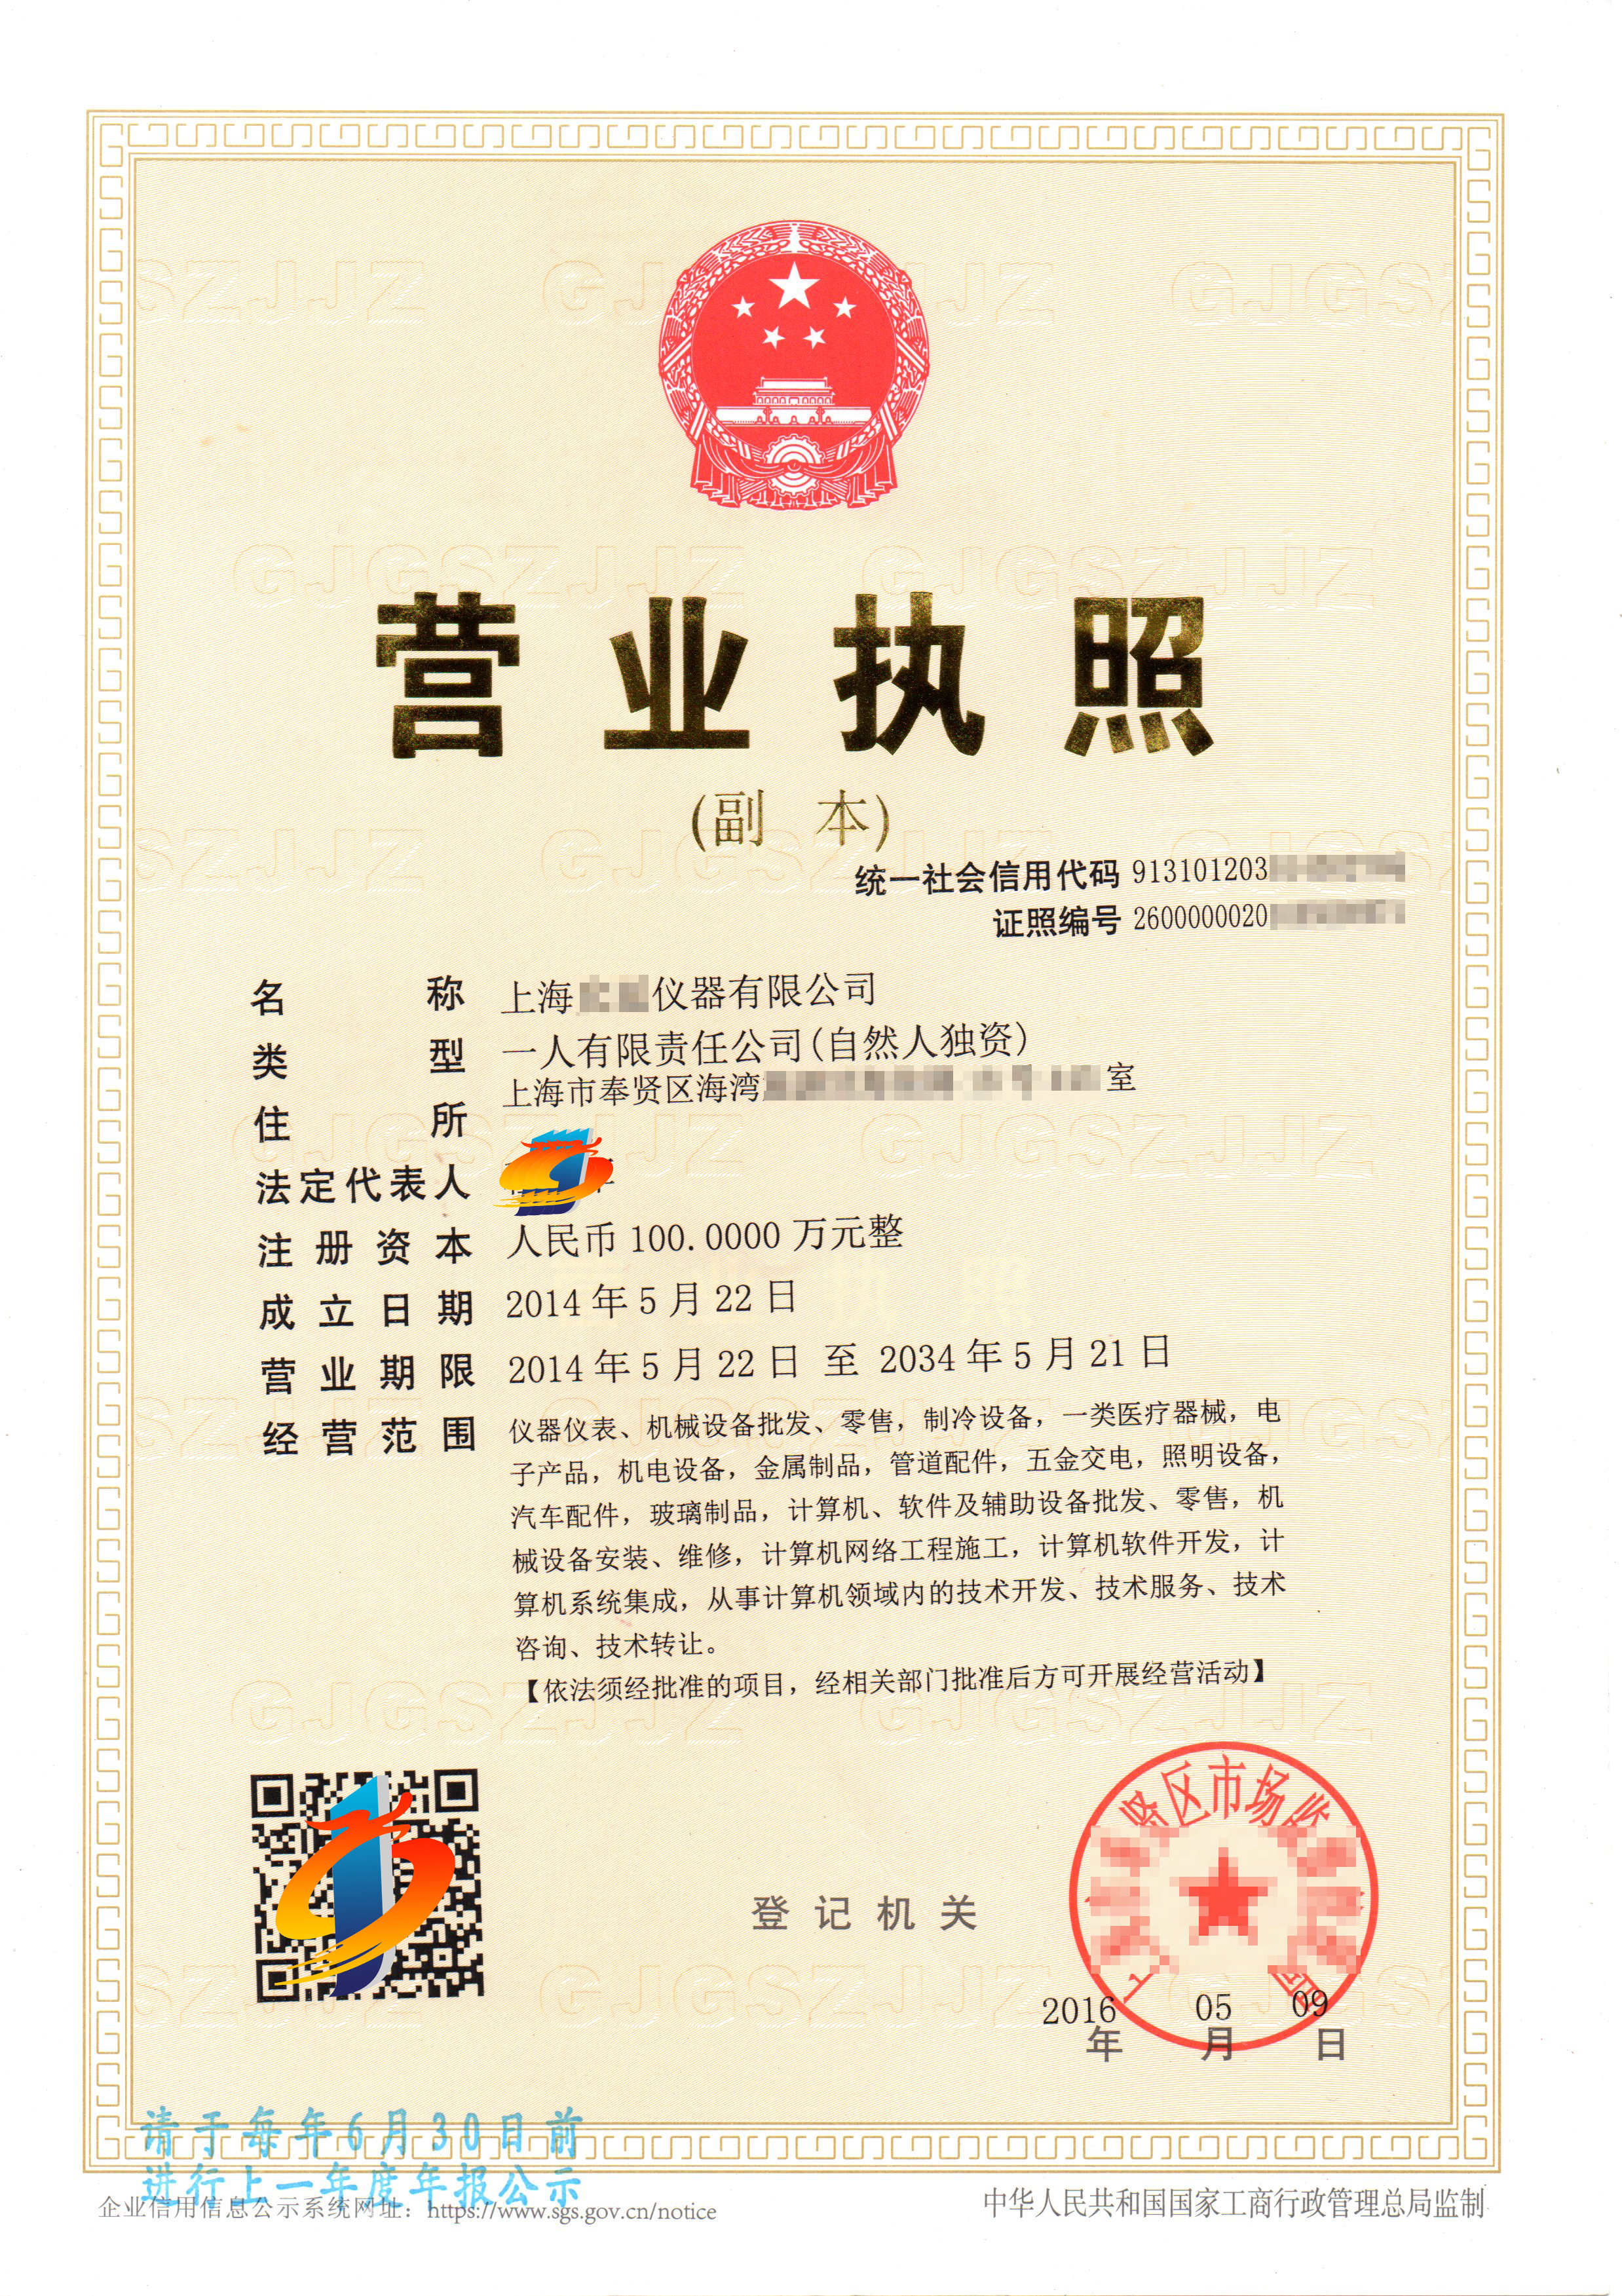 客户注册上海仪器公司